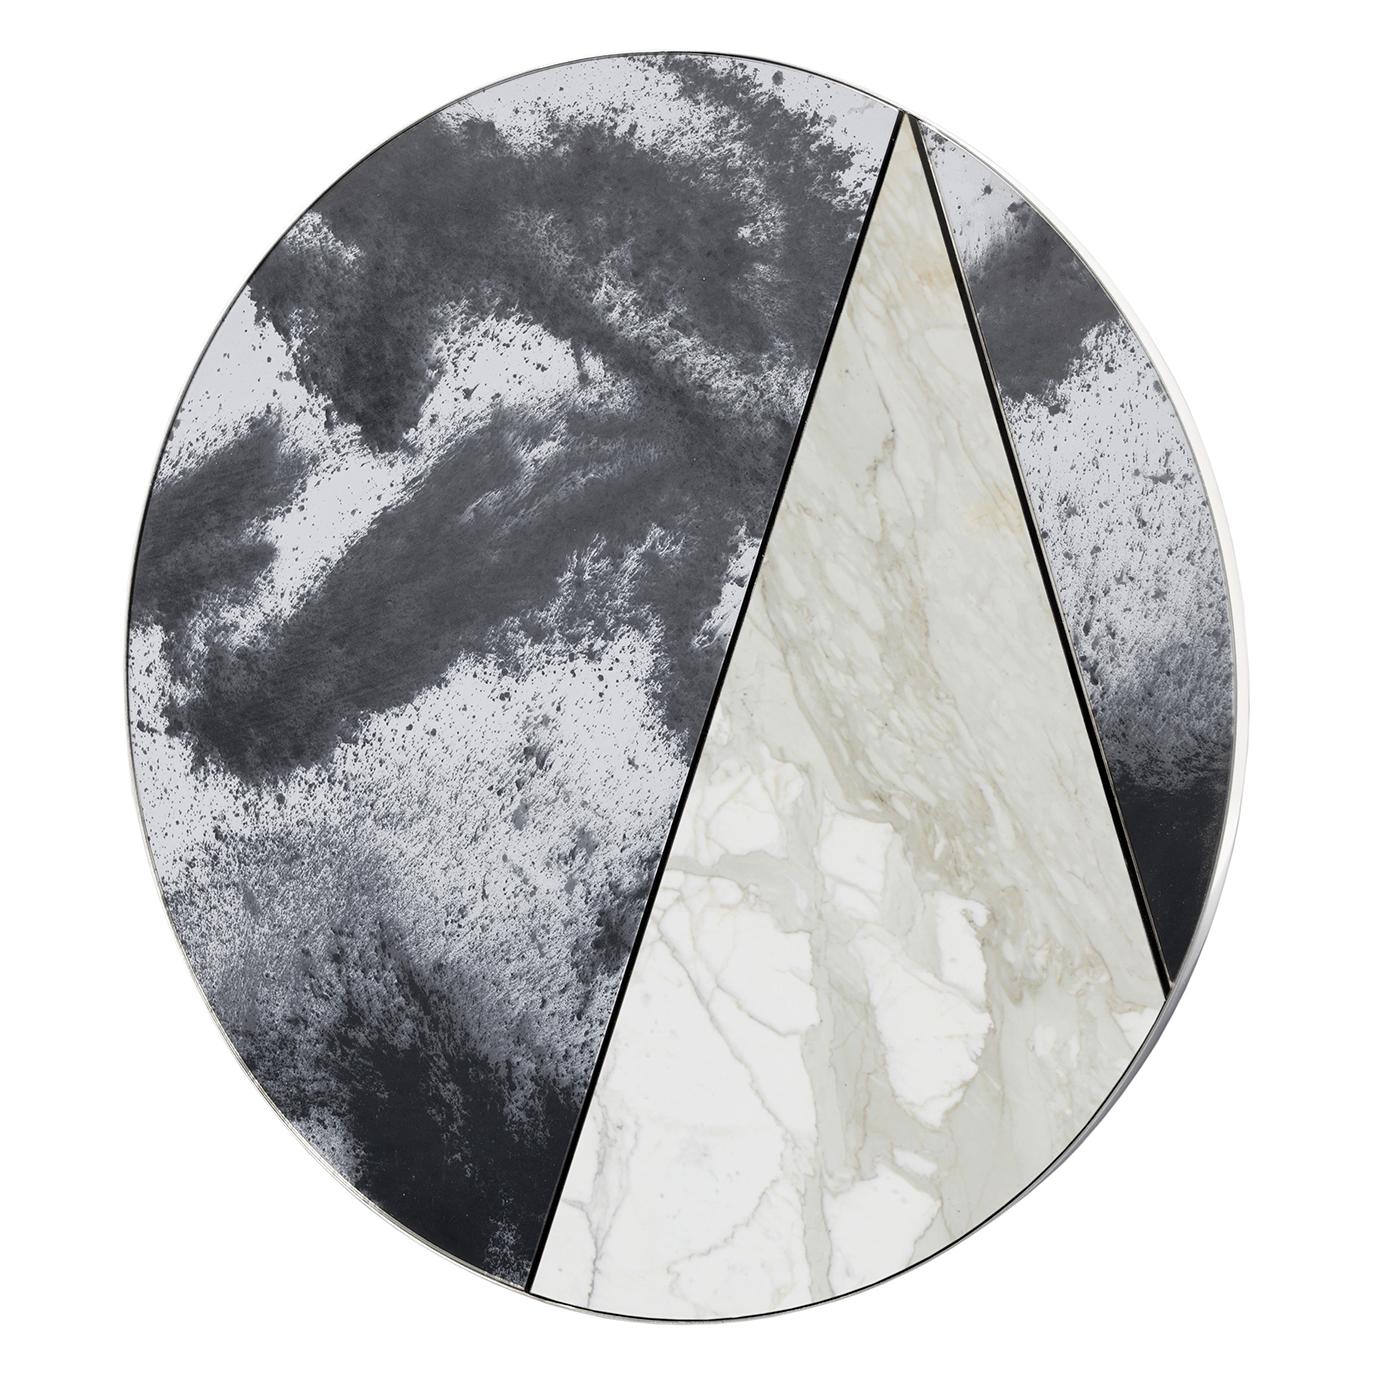 Scherben von antikem Glas umrahmen eine Scheibe Calacatta-Marmor im Spiegel Itinera Res Lunare III. Als einzigartiges Dekorationsstück mit harmonischem Design ist der Spiegel die perfekte Ergänzung für eine Konsole oder ein Sideboard in einem